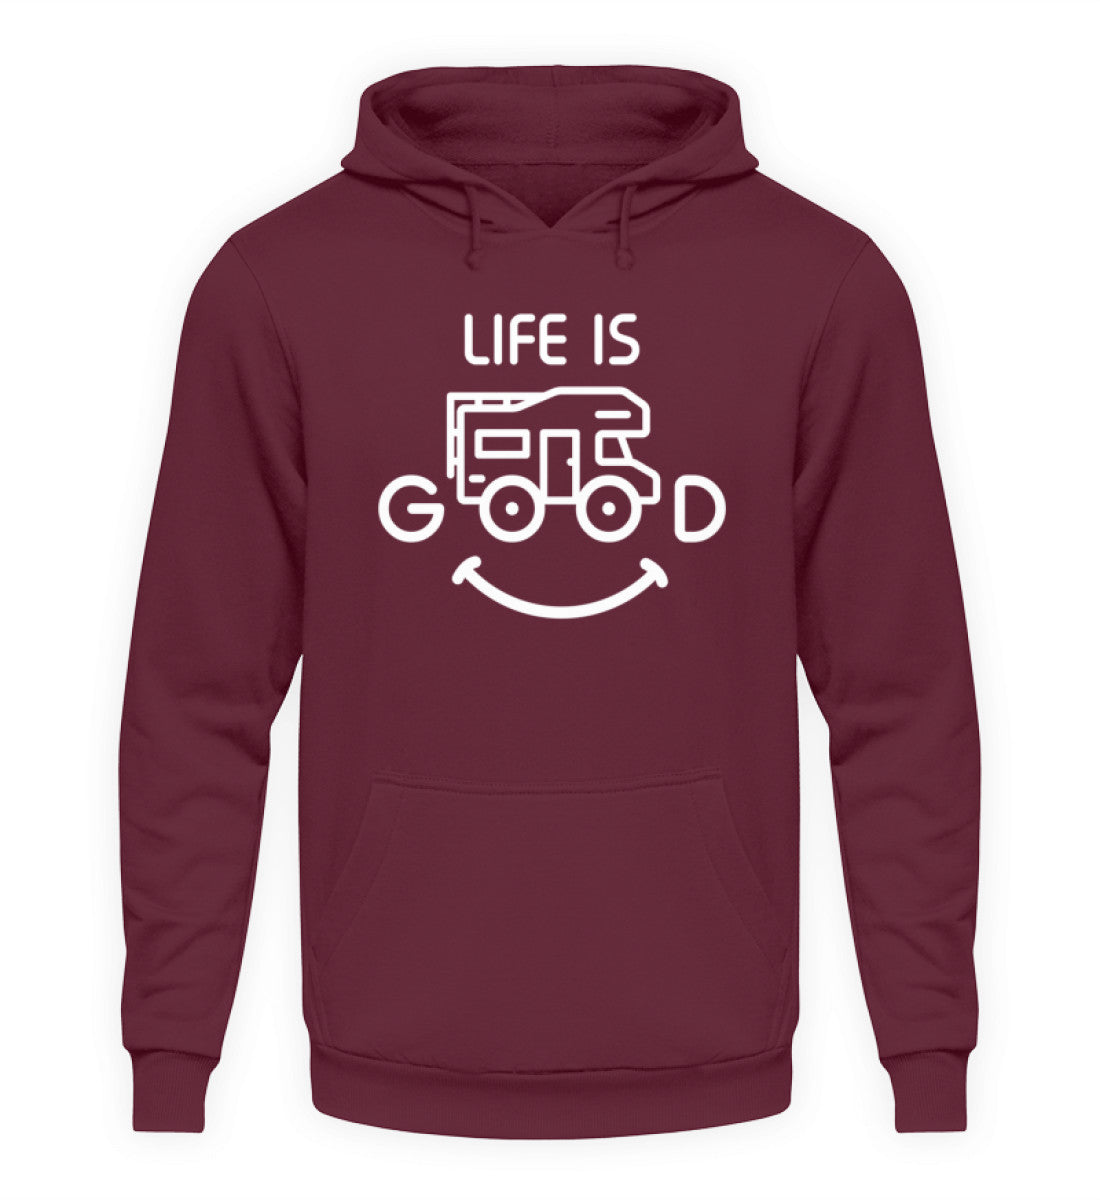 LIFE IS GOOD - Unisex Hoodie - Burgundy